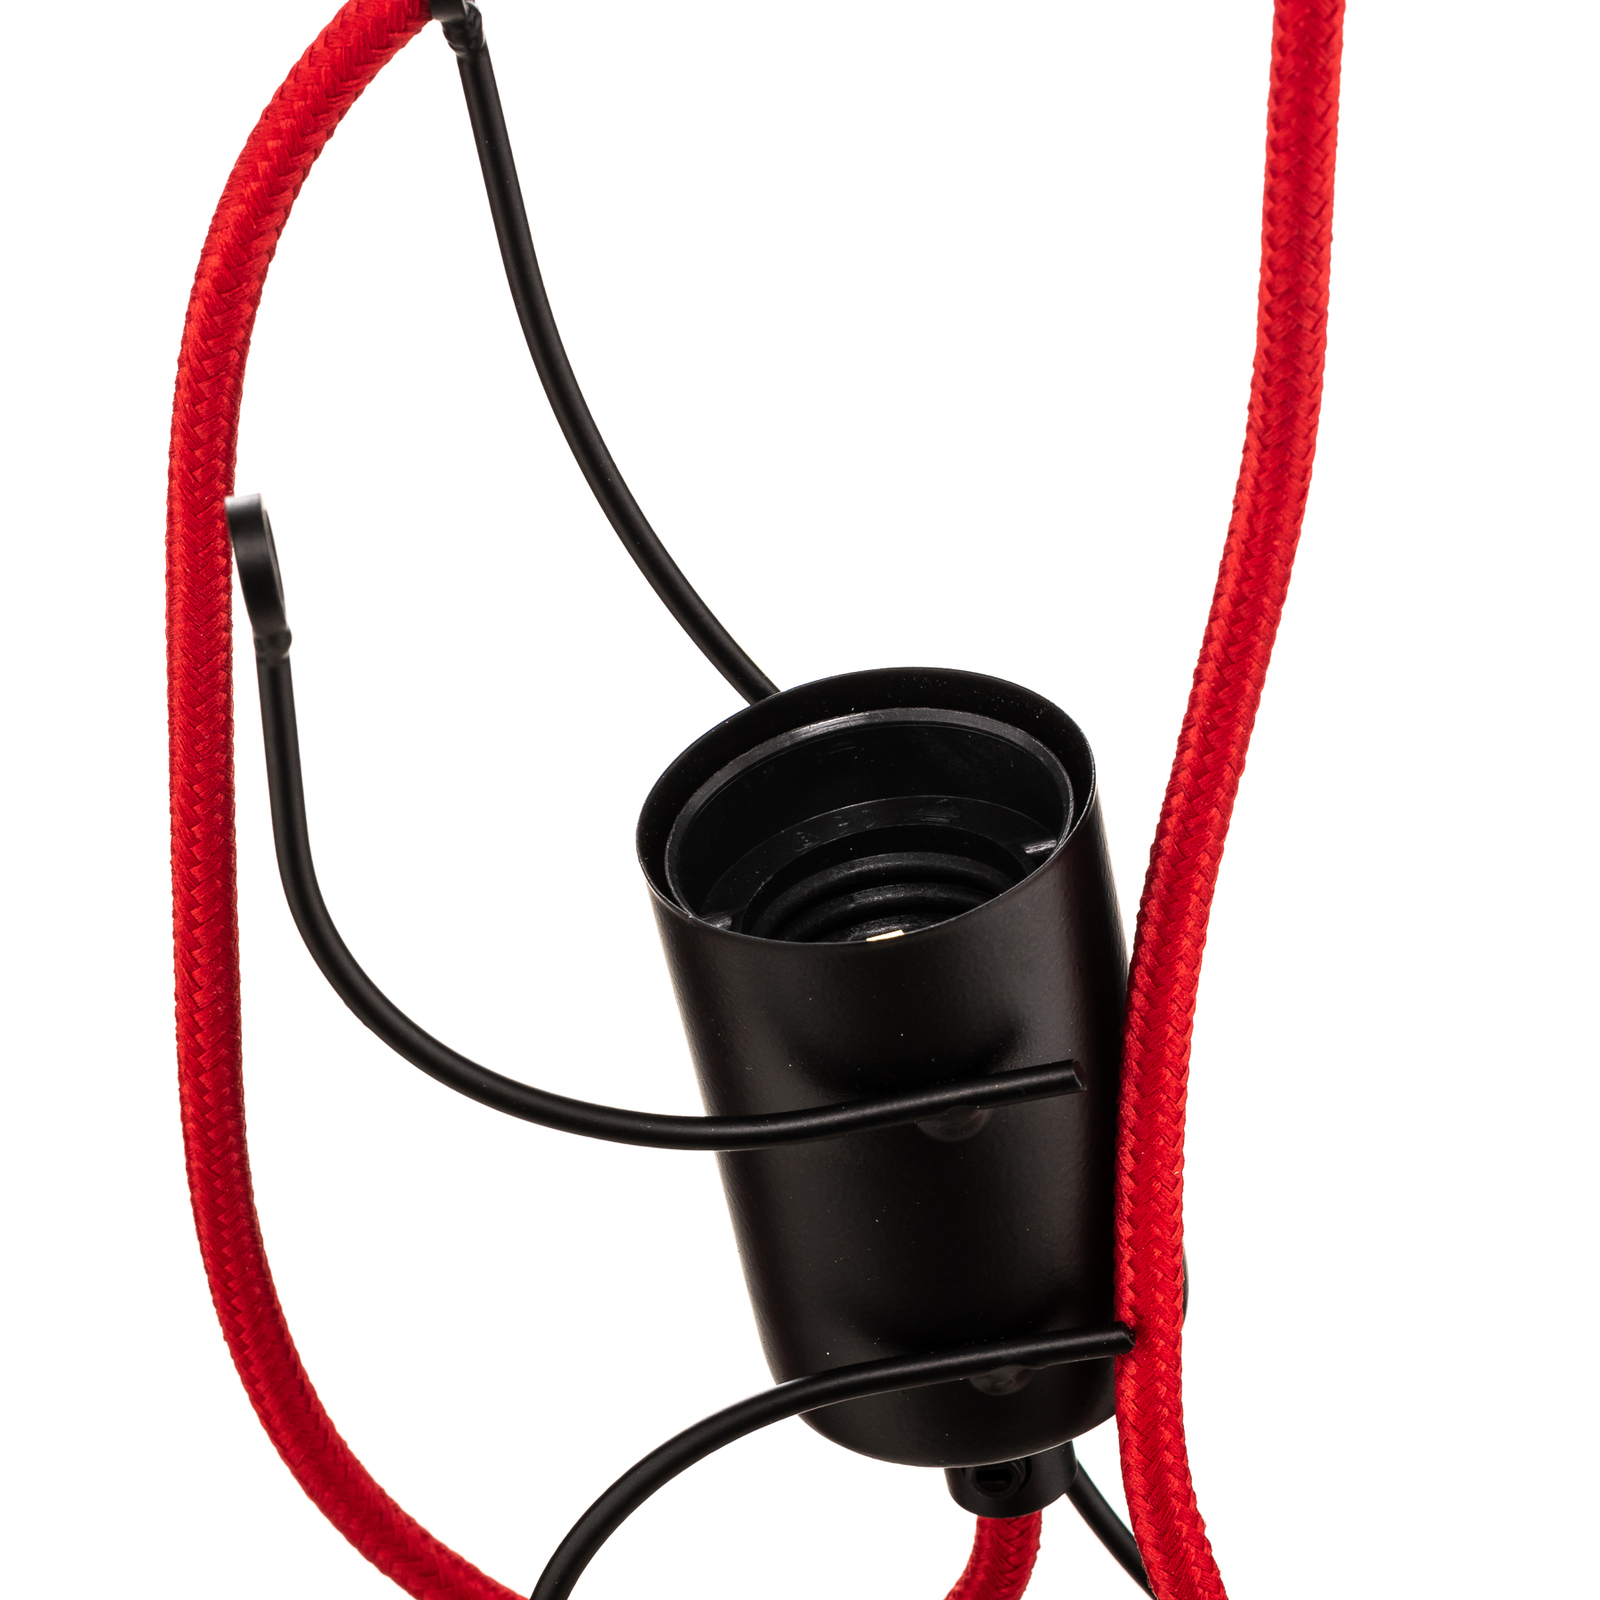 Hanglamp Bobi 2 in zwart, kabel rood, 2-lamps